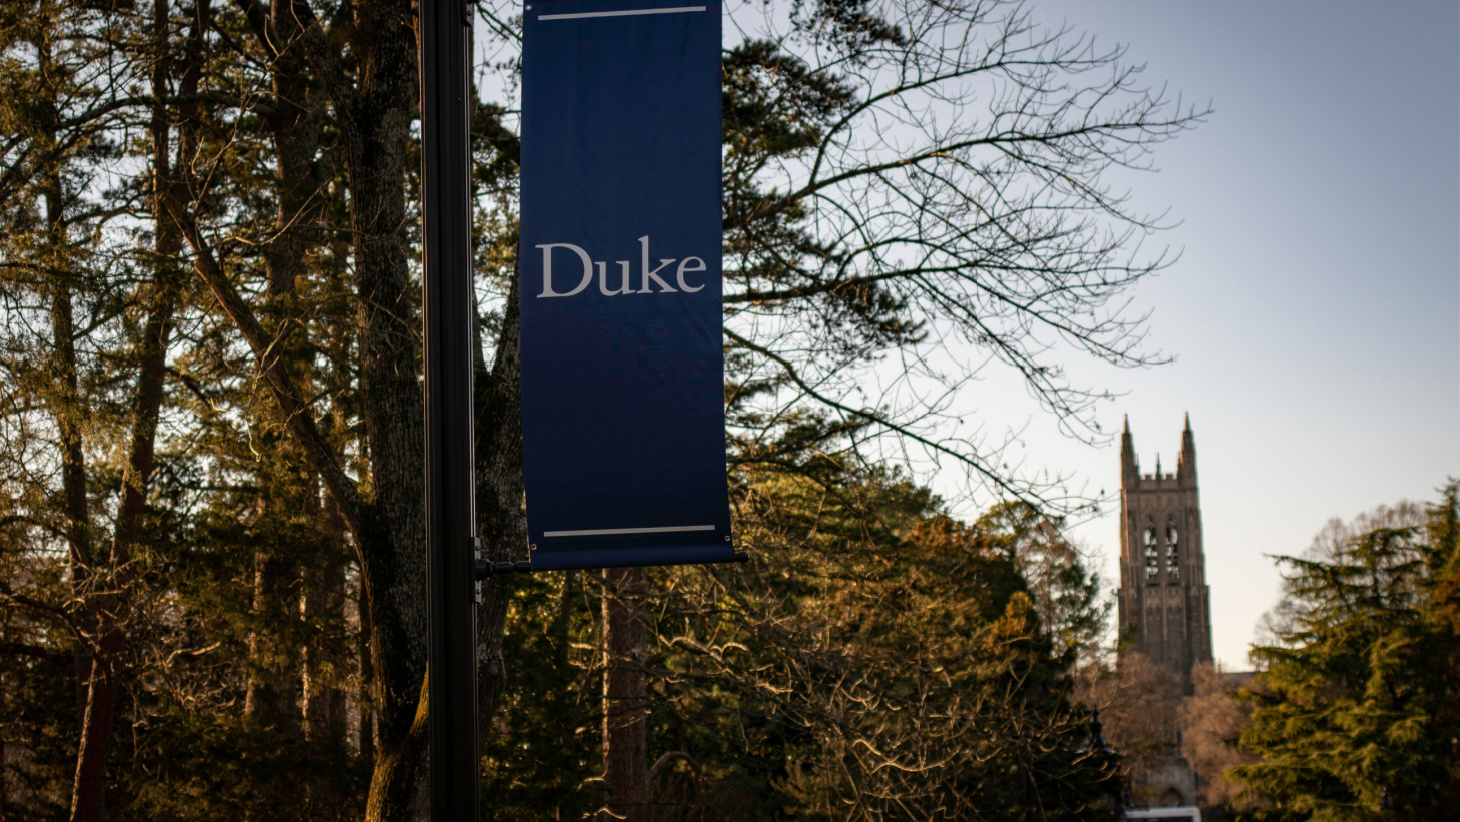 supplemental essays for duke university